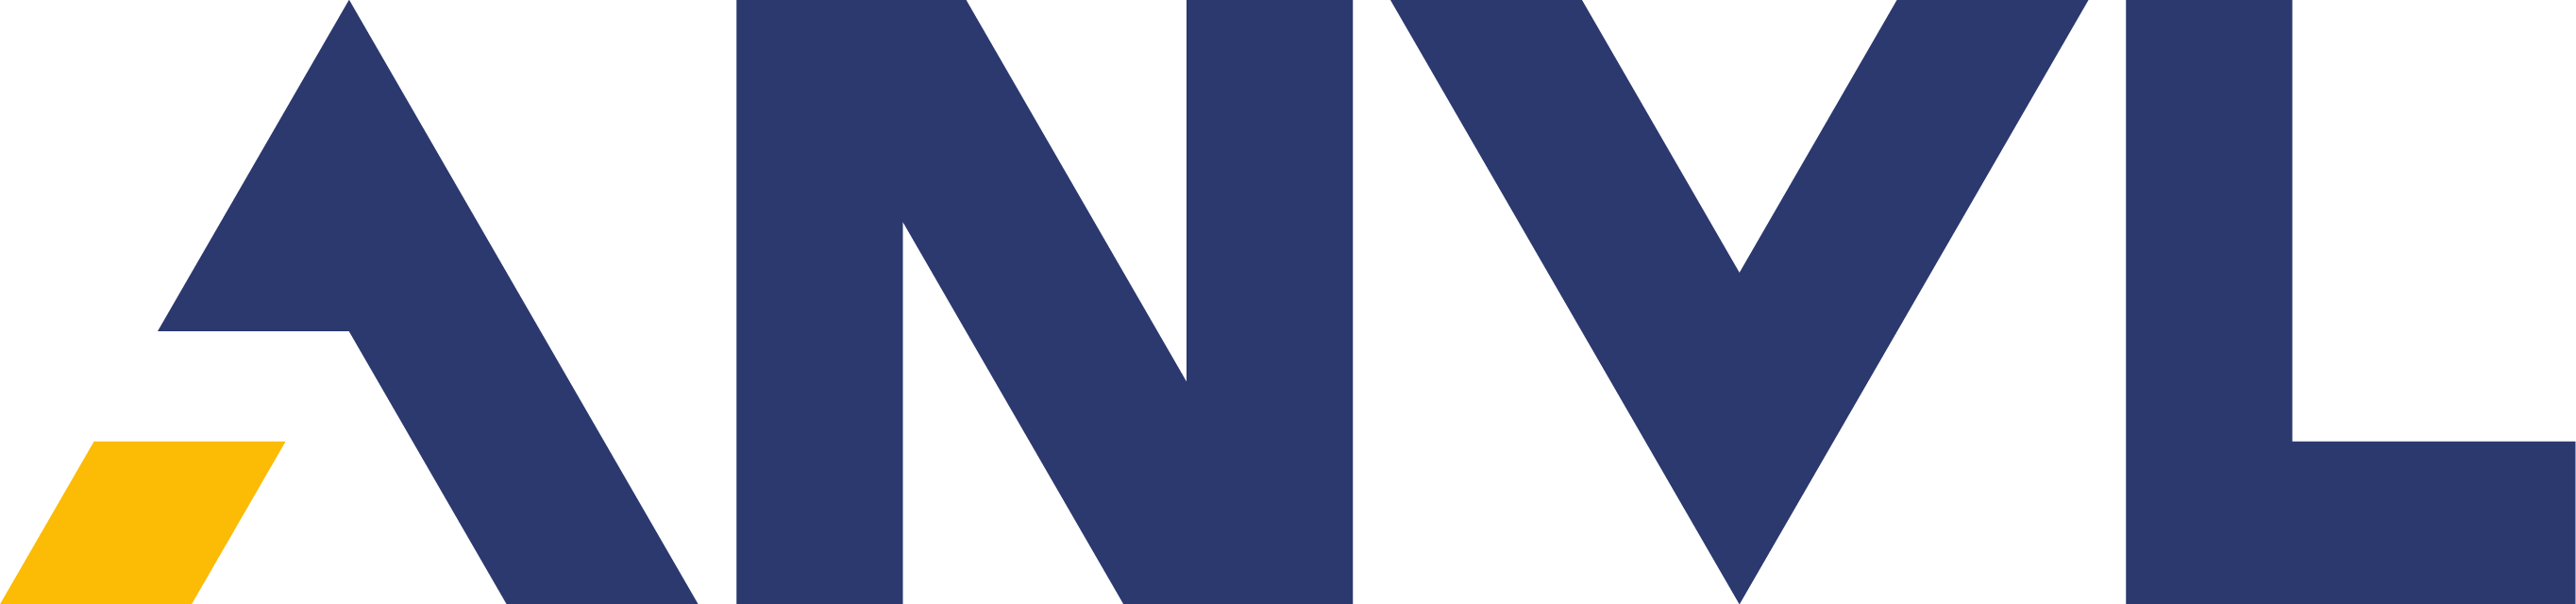 Anvl company logo